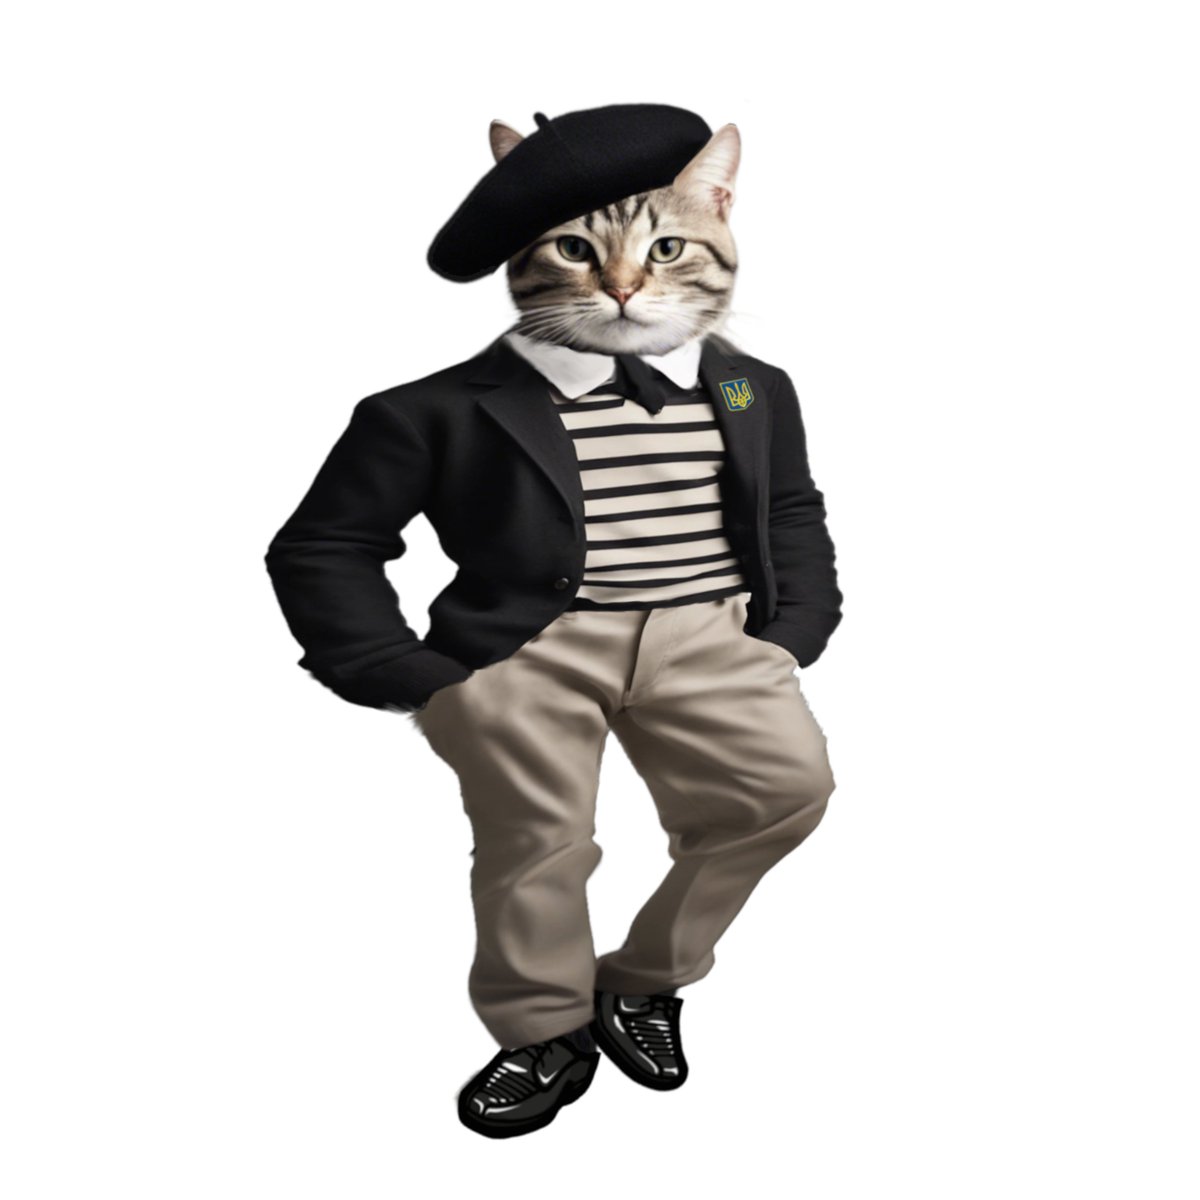 Voyez! Un nouveau #Fella est né ! Réalisé sur demande par e-Mail pour représenter « un chat français paresseux avec un béret et une marinière » #NAFOCatsDivision #NAFOExpansionIsNonNegotiable @Official_NAFO